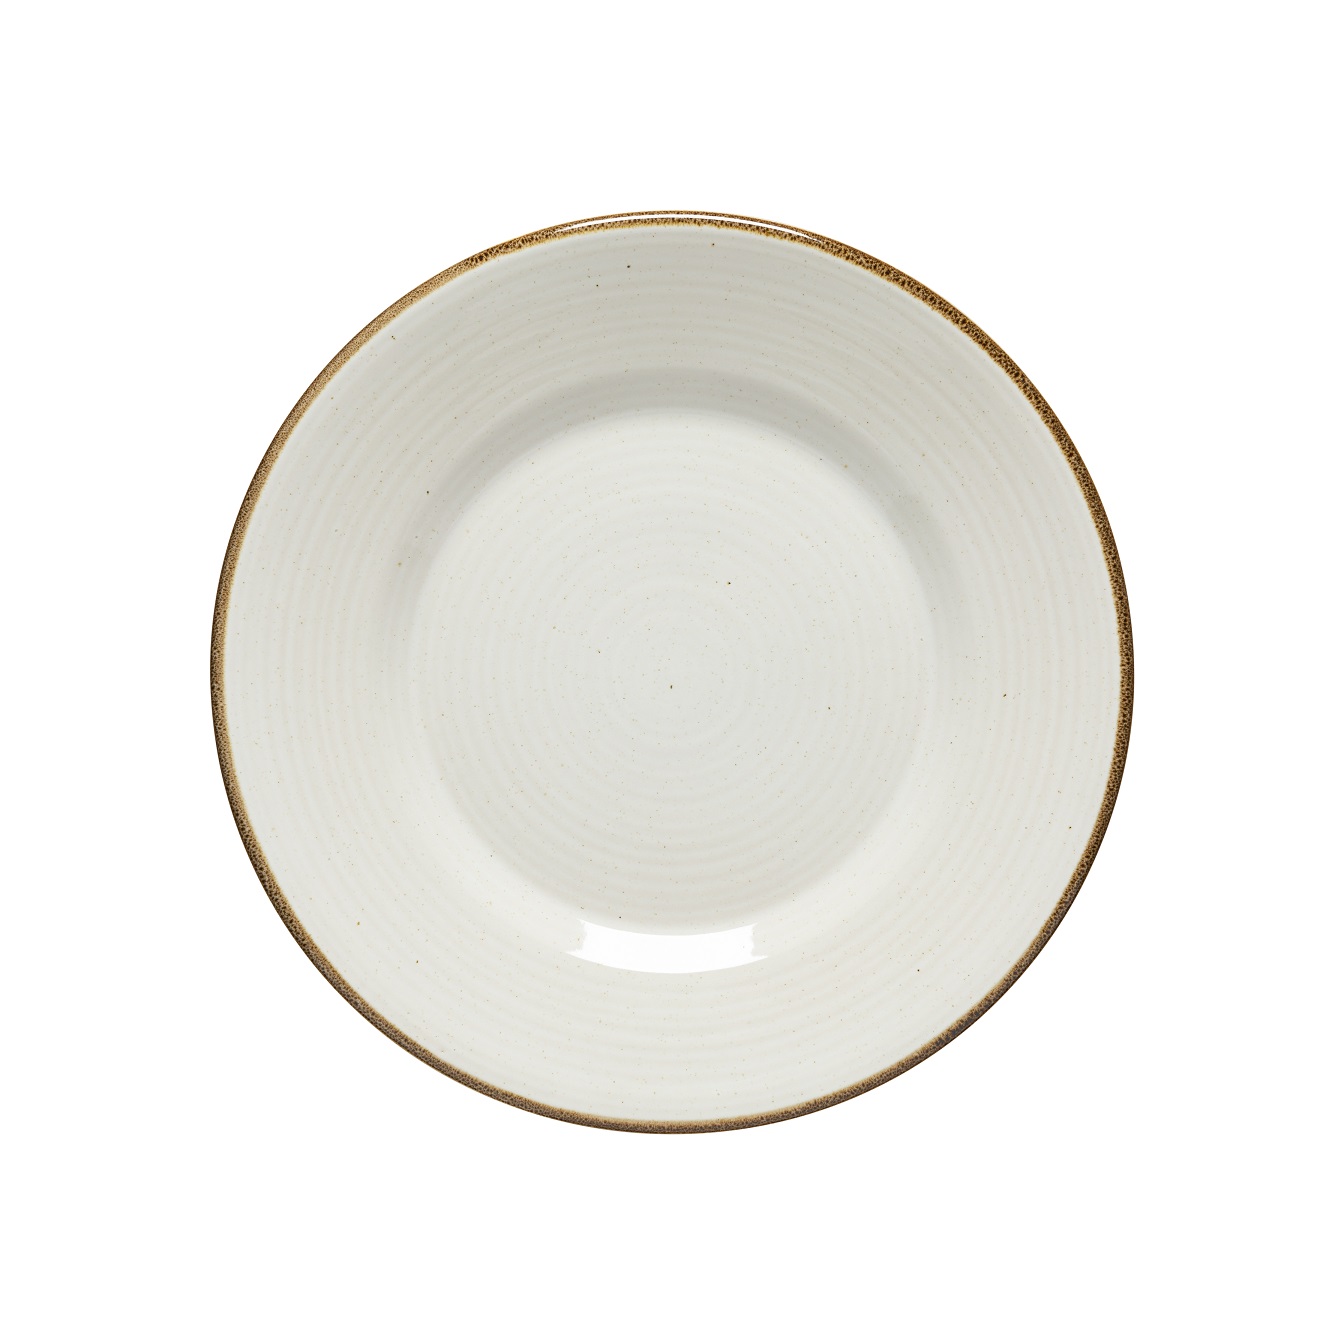 Sardegna White Dinner Plate 28cm Gift